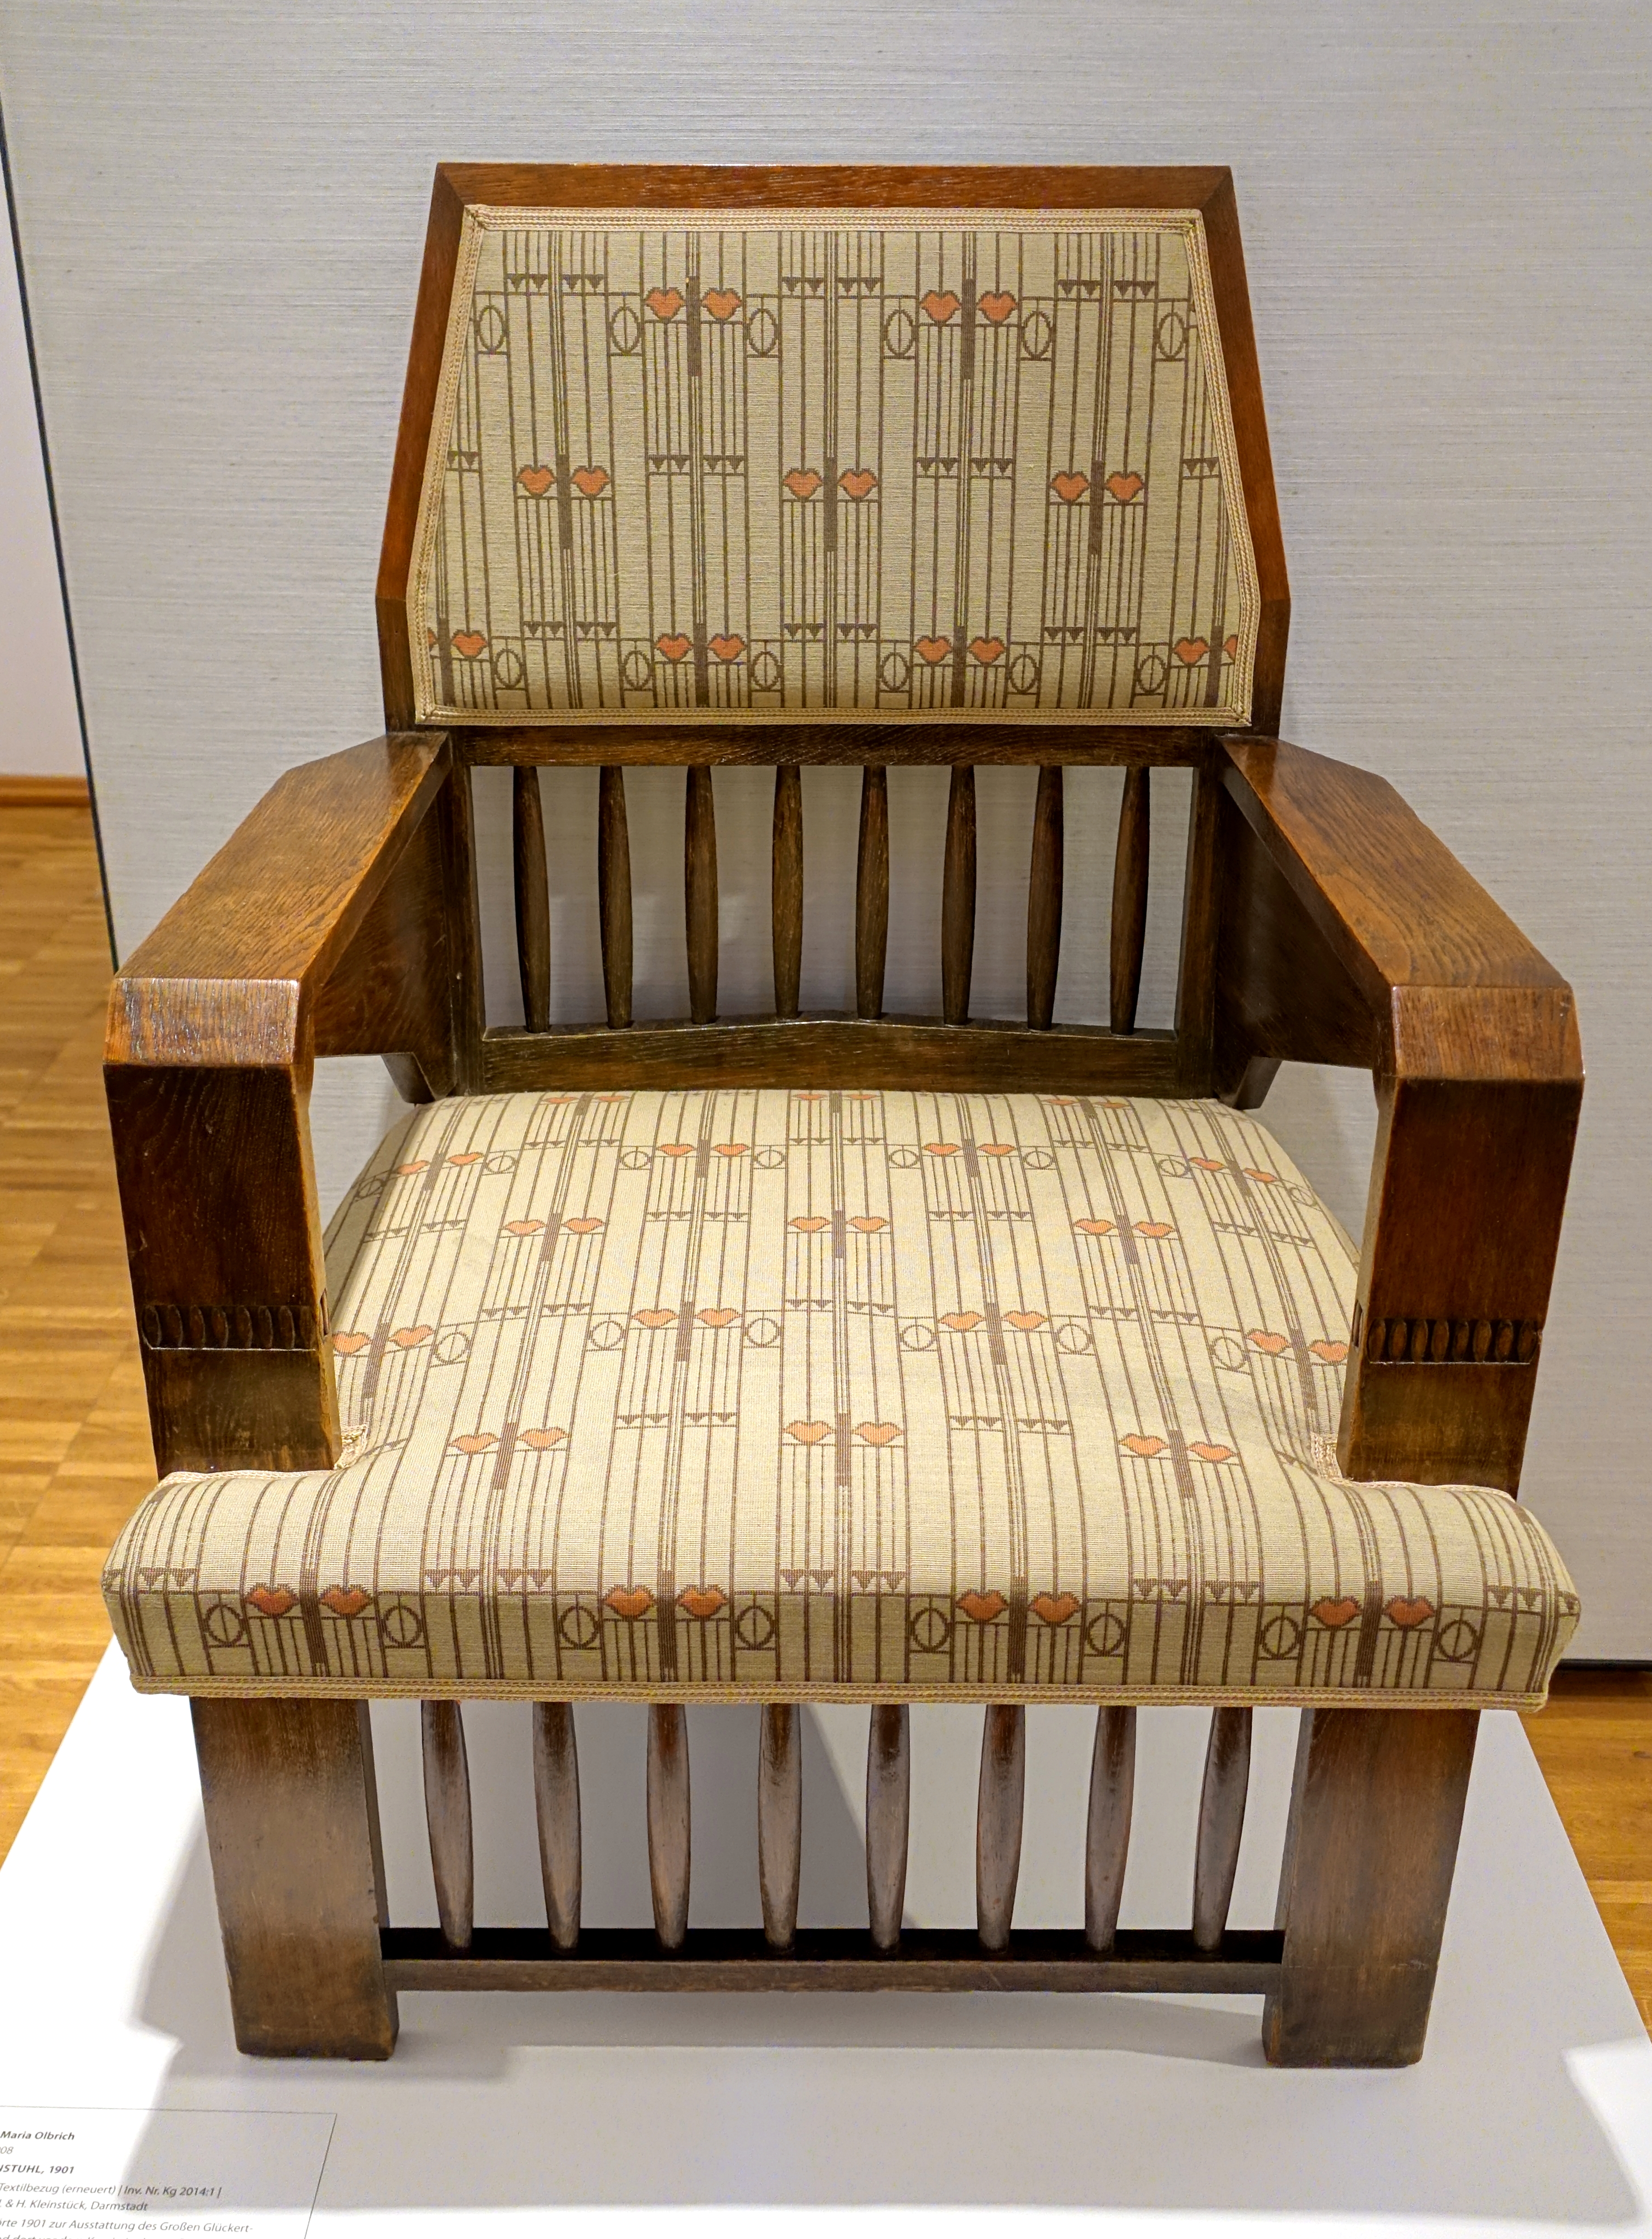 File:Armchair by Joseph Maria Olbrich, Schenkung U. & H. Kleinstuck,  Darmstadt, 1901, bog oak, textile - Hessisches Landesmuseum Darmstadt -  Darmstadt, Germany - DSC00885.jpg - Wikipedia